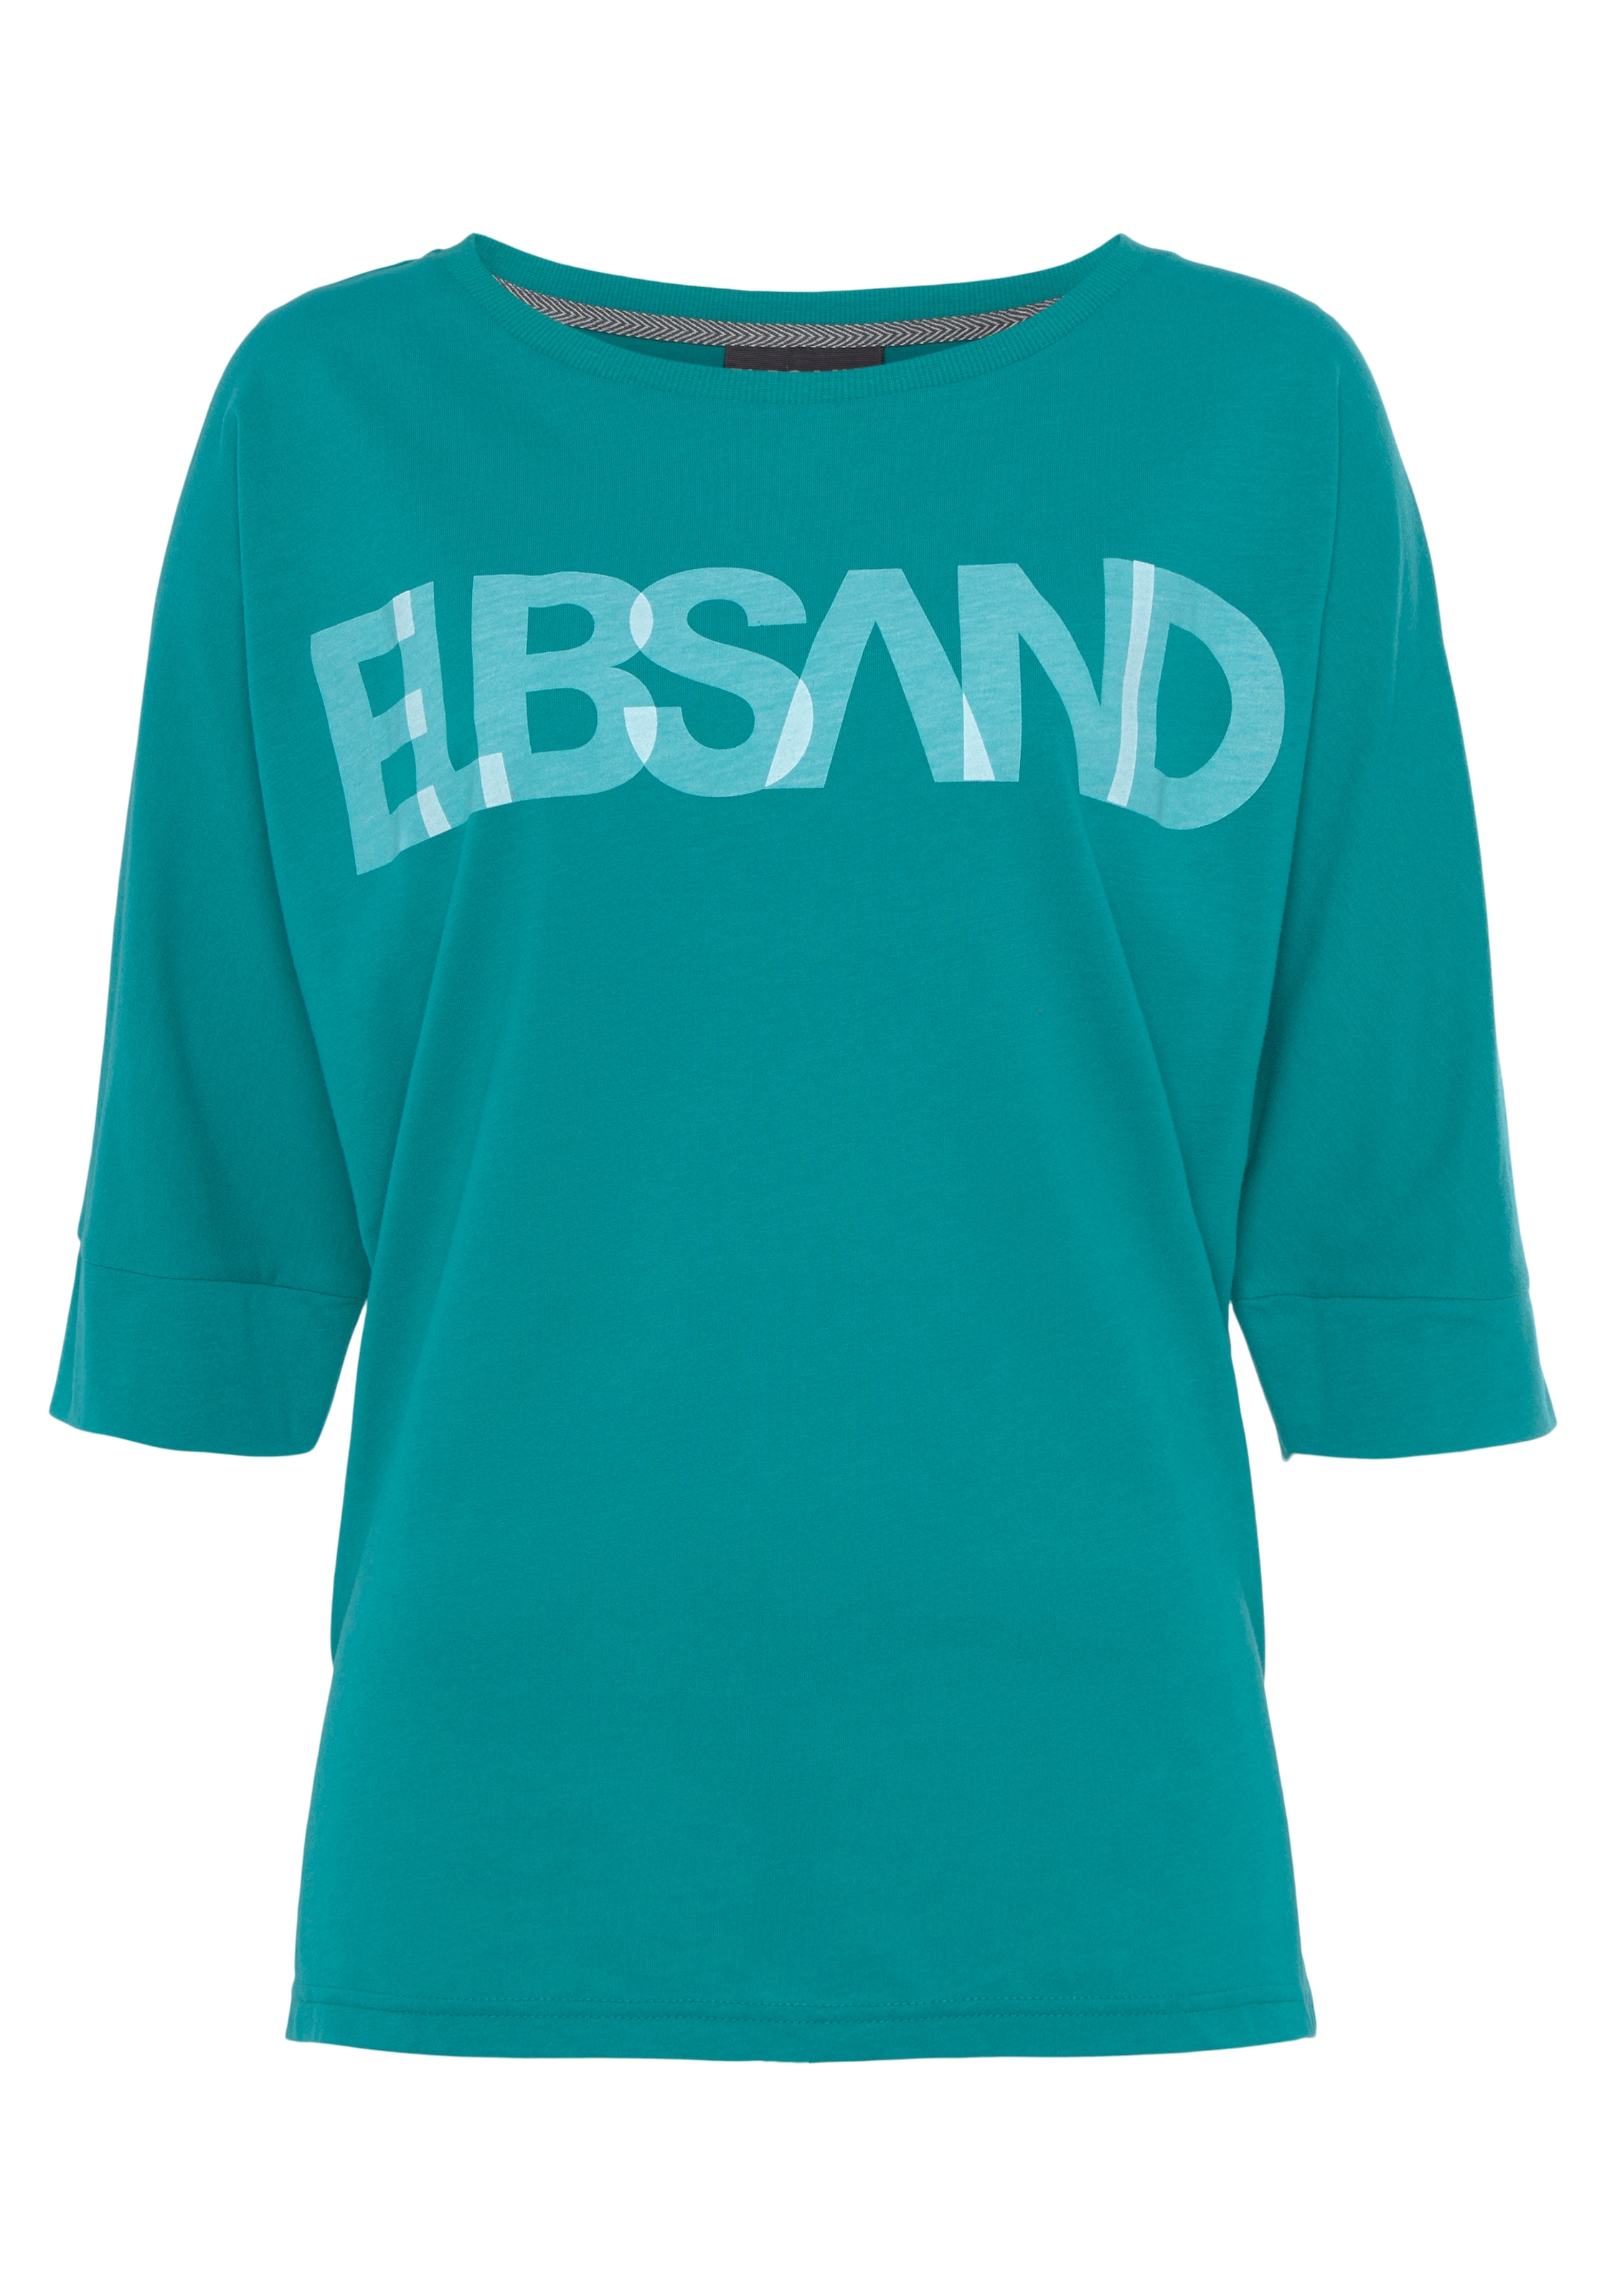 Elbsand 3/4-Arm-Shirt, mit Logodruck, Baumwoll-Mix, lockere Passform  bestellen im OTTO Online Shop | Rundhalsshirts